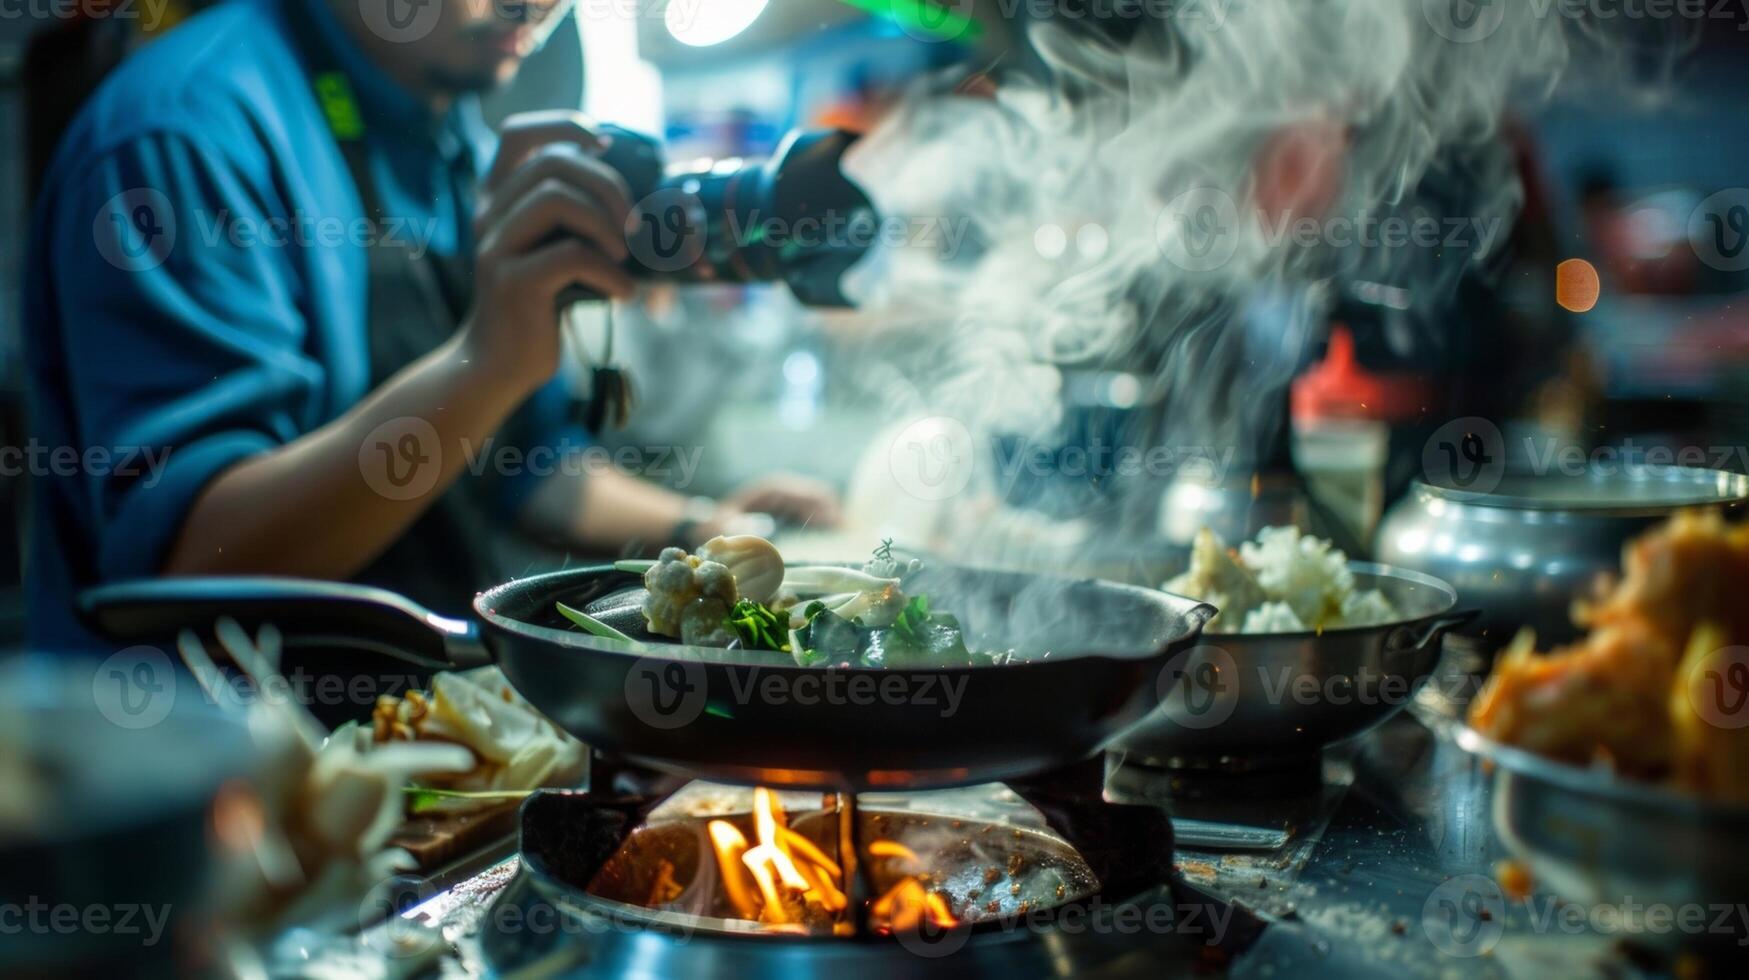 en Foto av en verkstad deltagare fångande de fräsa vid matlagning och ånga av en nyligen kokta tropisk maträtt på deras kamera